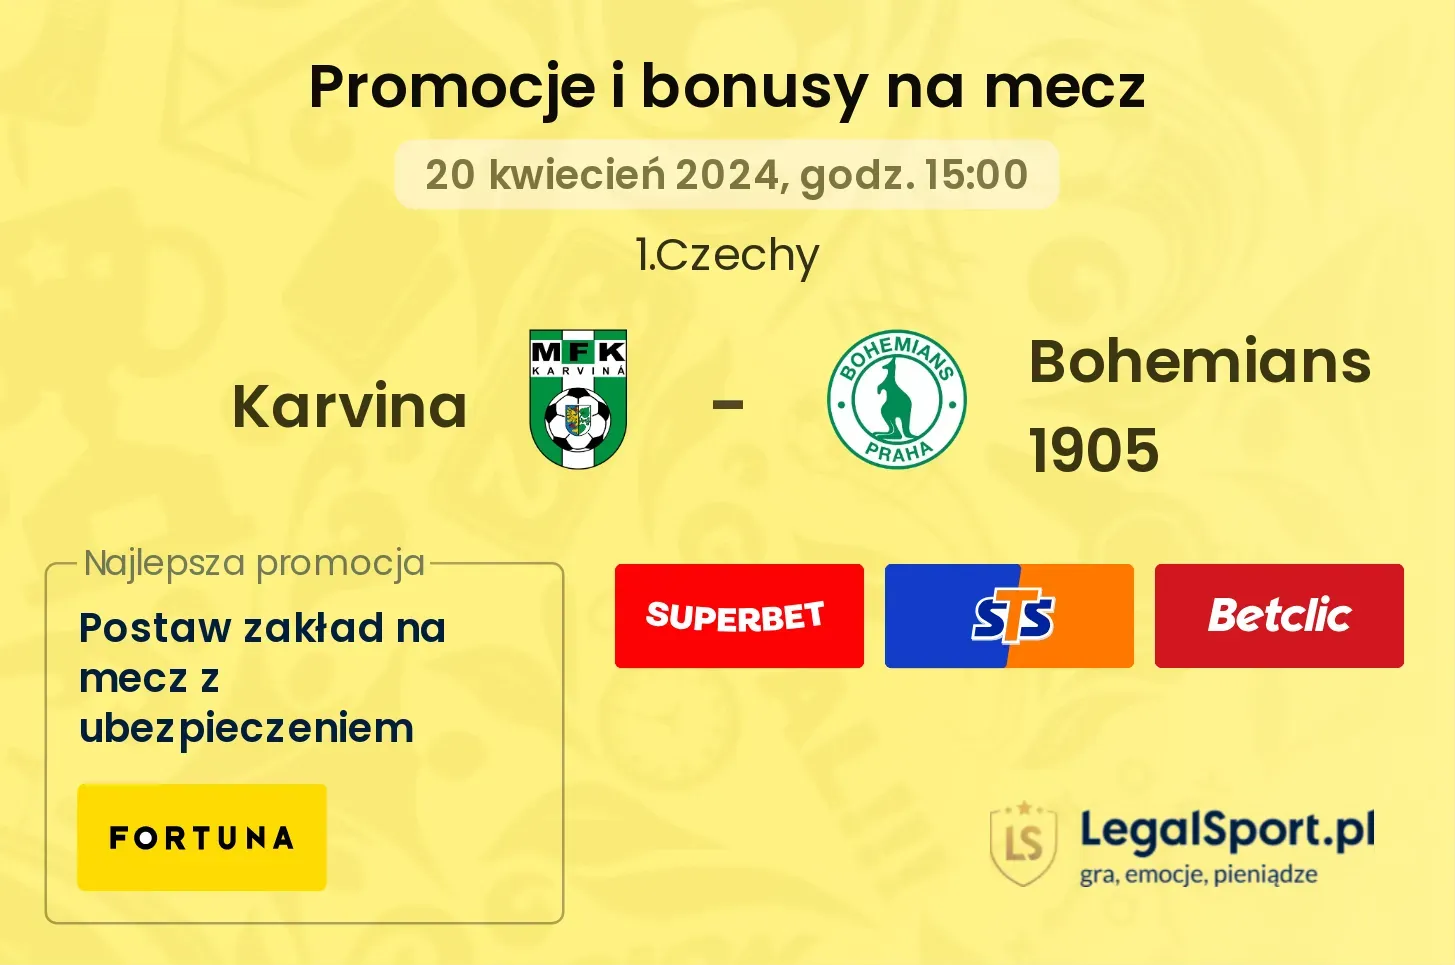 Karvina - Bohemians 1905 promocje bonusy na mecz